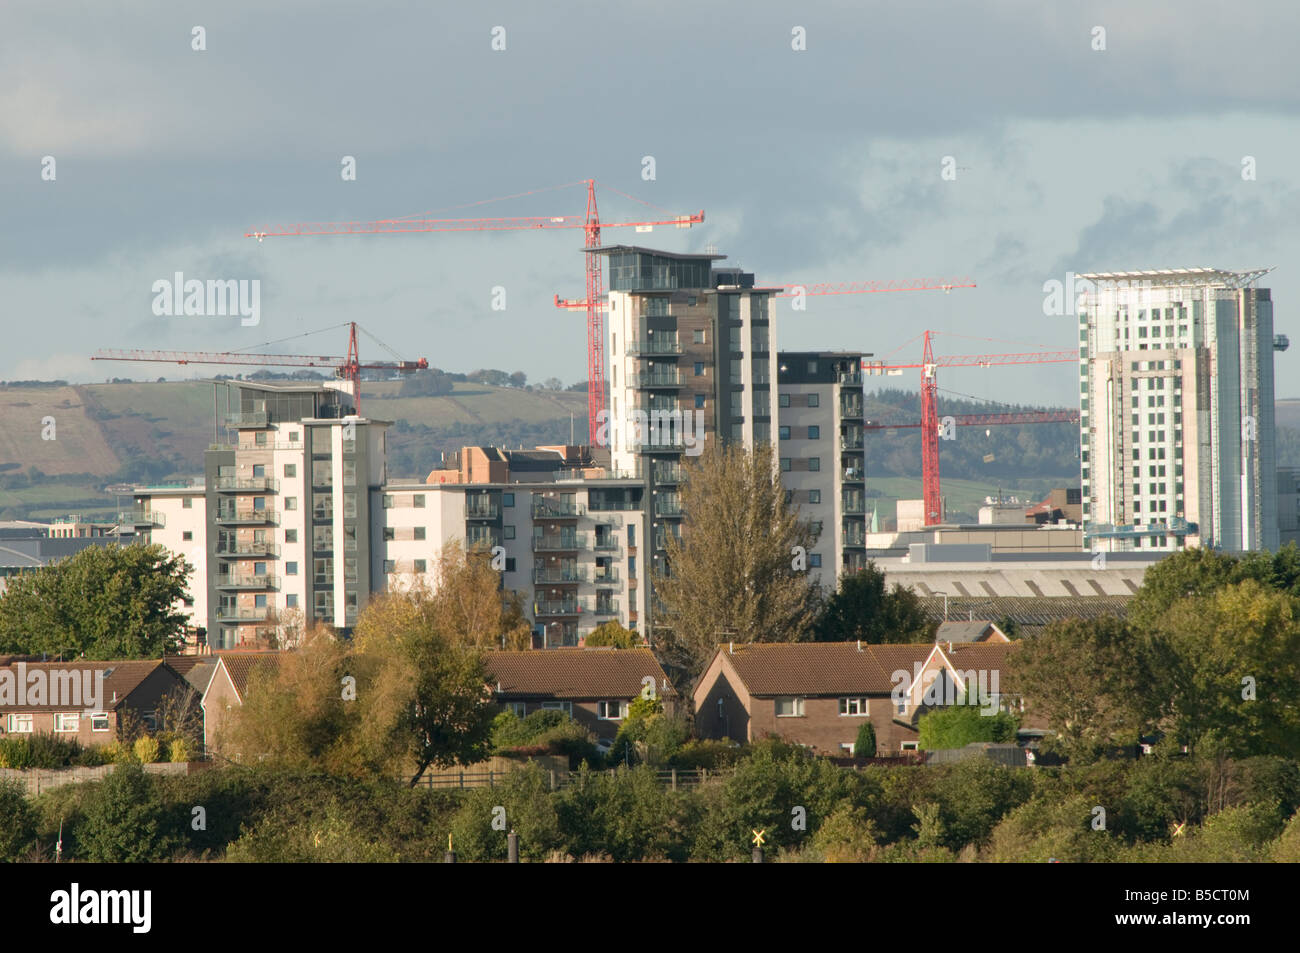 Turmdrehkrane arbeiten am Bau Websites Cardiff Stadt Skyline aus der Bucht mit dem Millennium Stadium, Wales UK gesehen Stockfoto